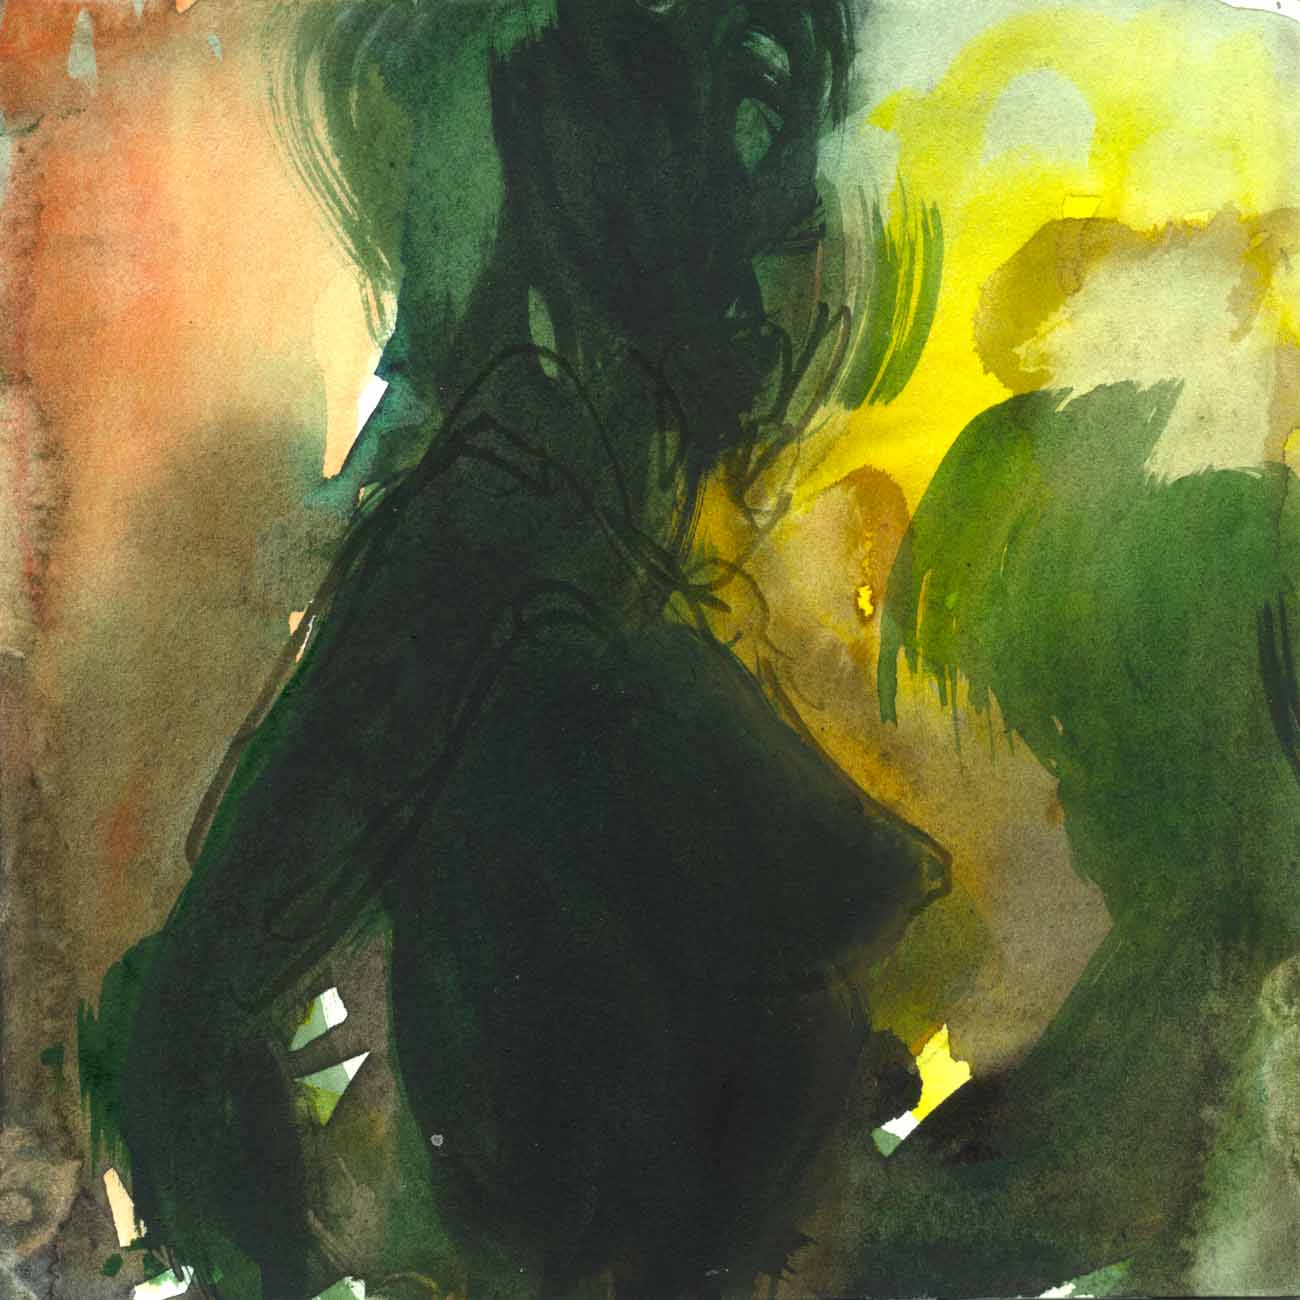 Chiara Lera - Senza titolo, 14x14 cm, acquarello su carta, 2016